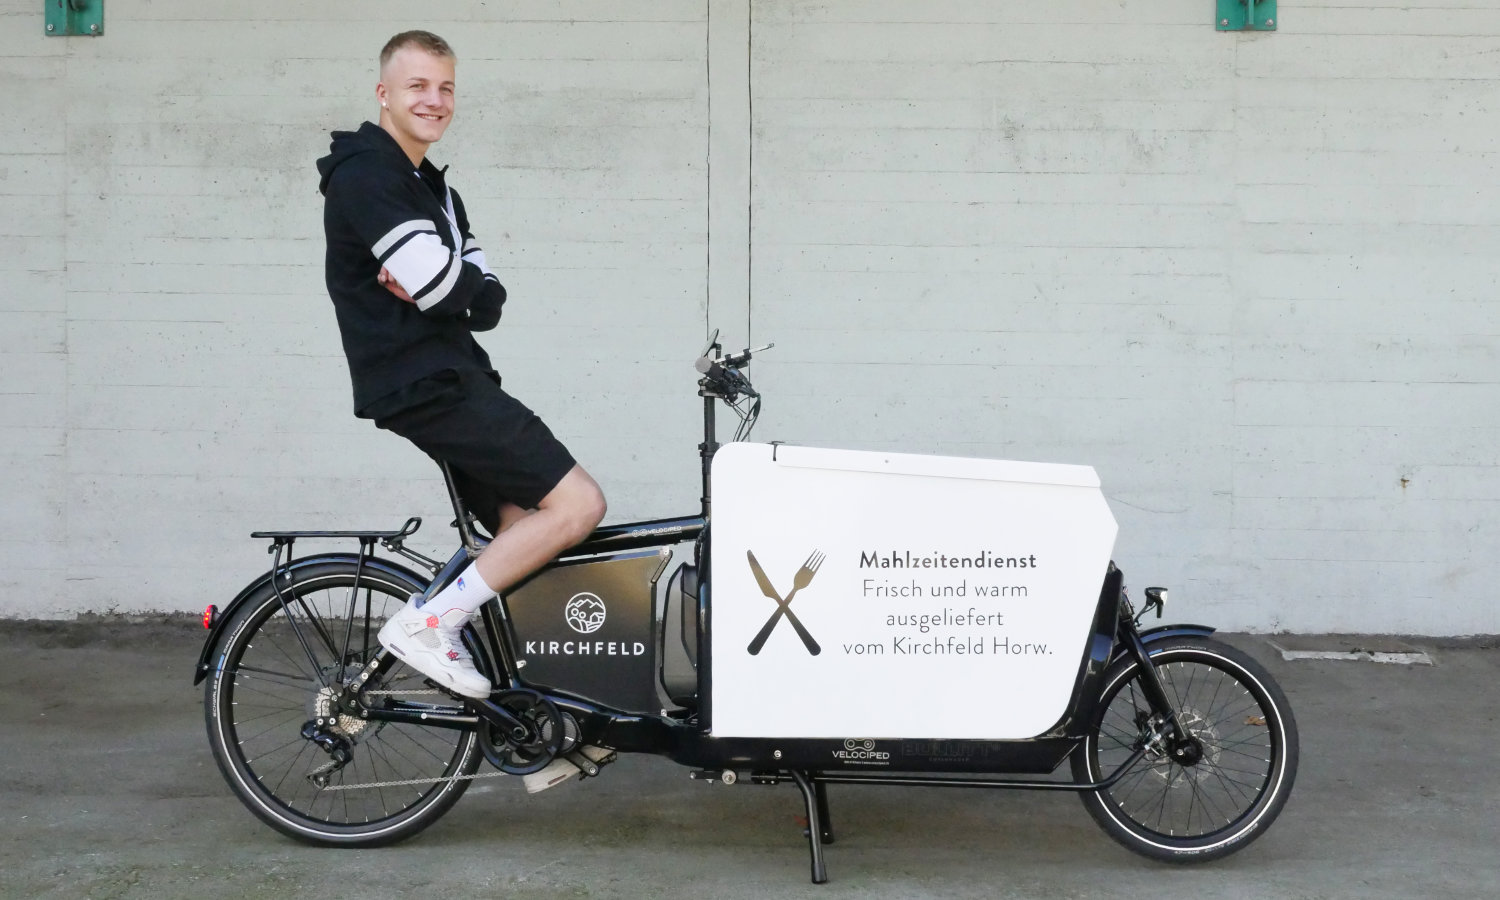 jetzt gibts einen Zustupf für  dein Firmen-Cargobike